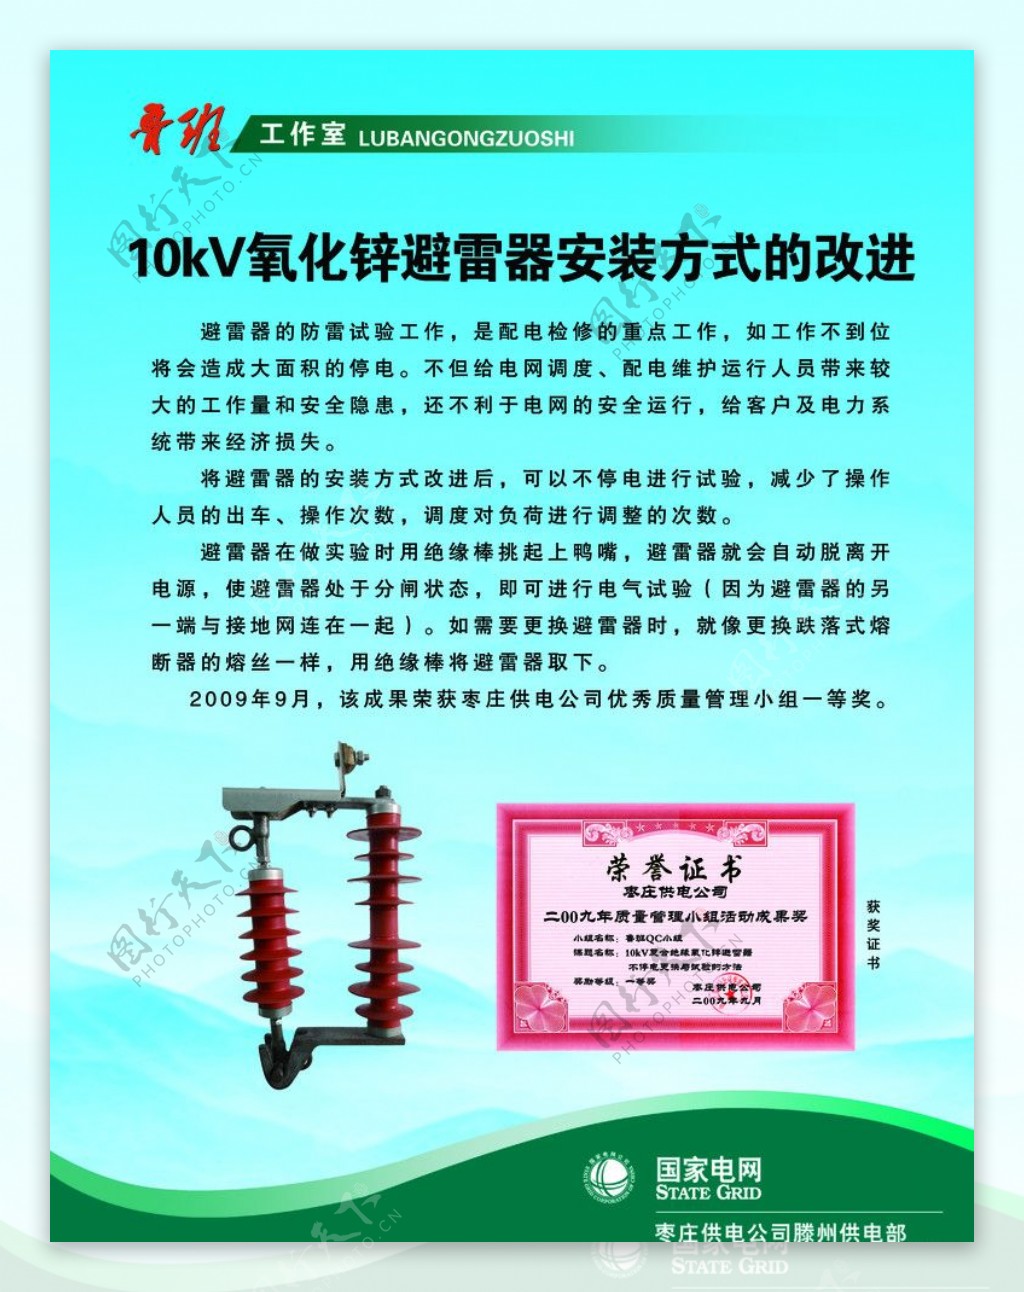 10kV氧化锌避雷器安装方式的改进图片